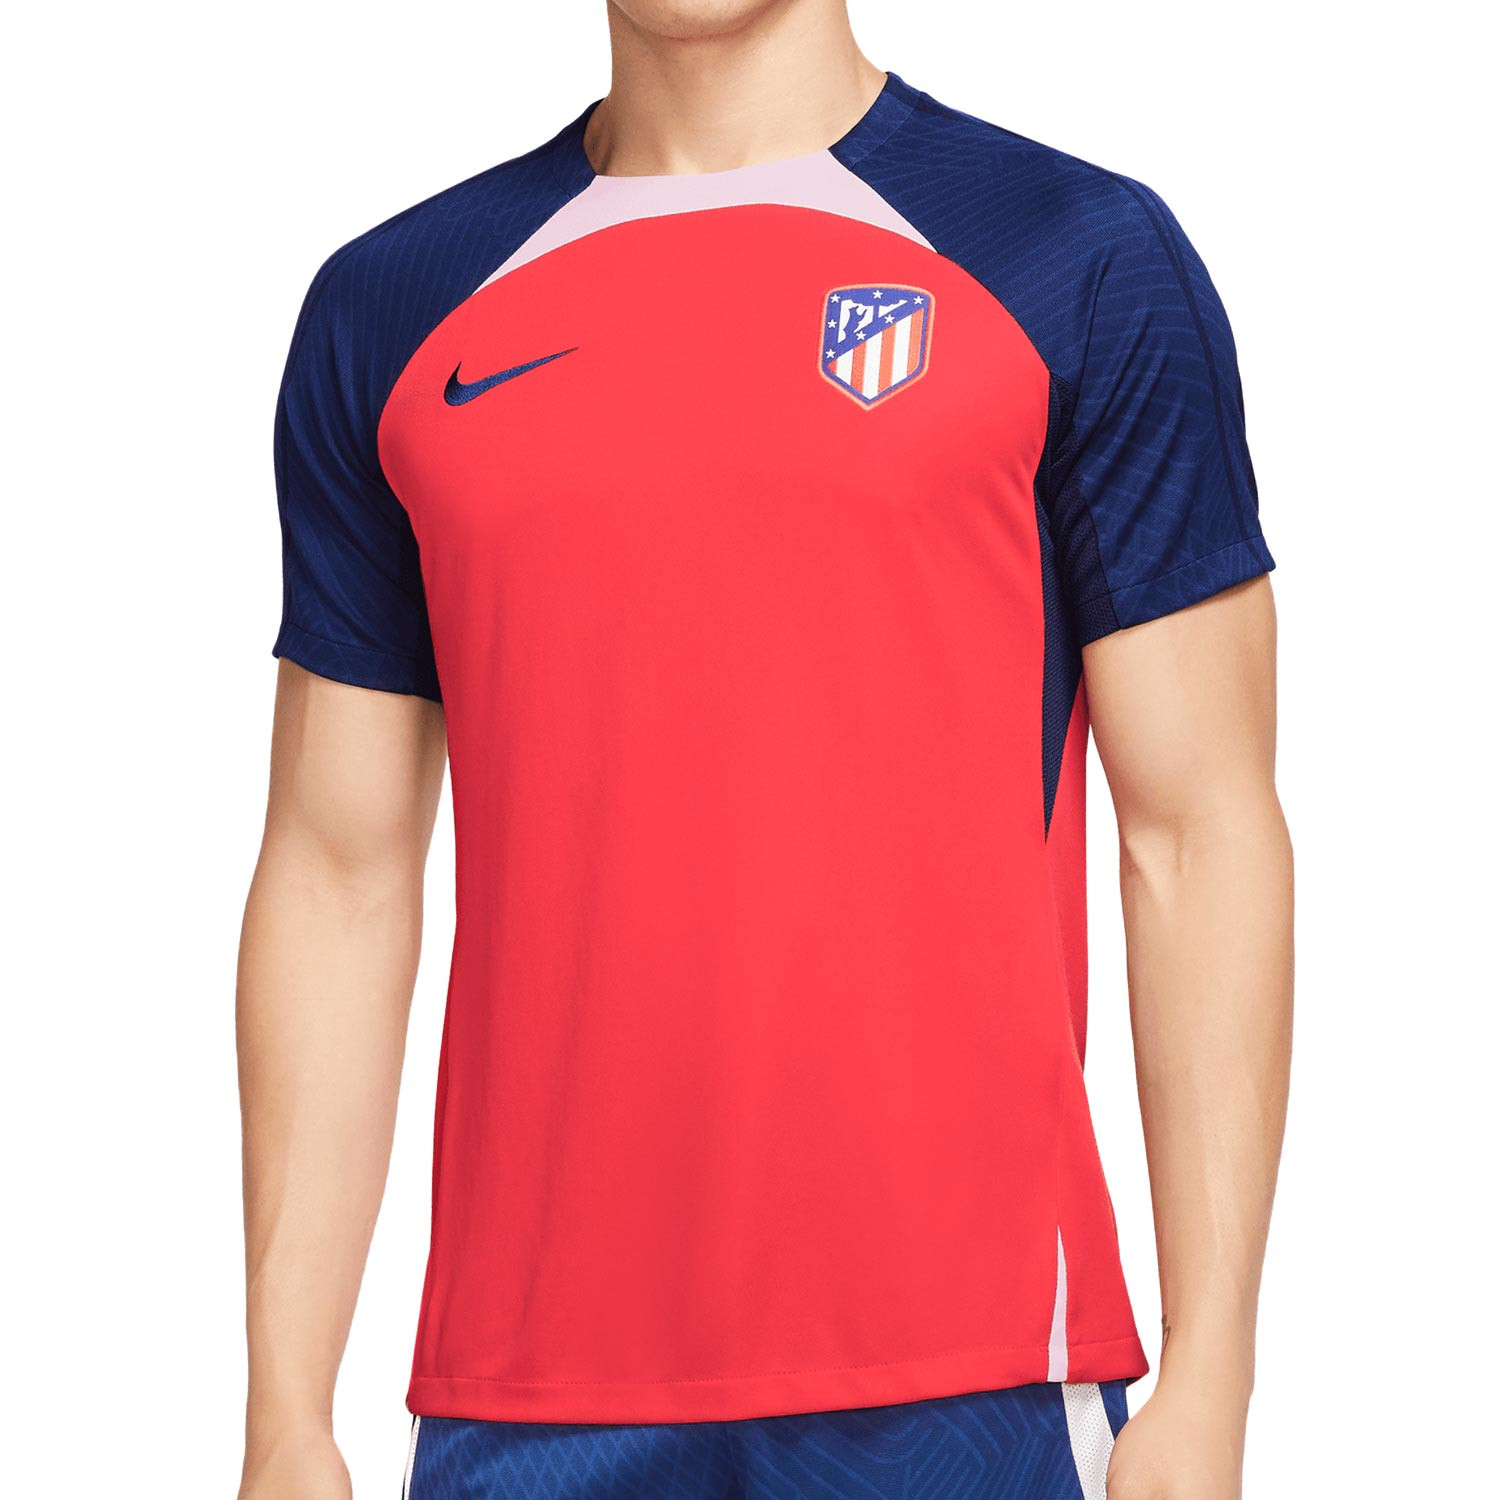 Camiseta Nike Atlético entrenamiento DF Stk roja azul